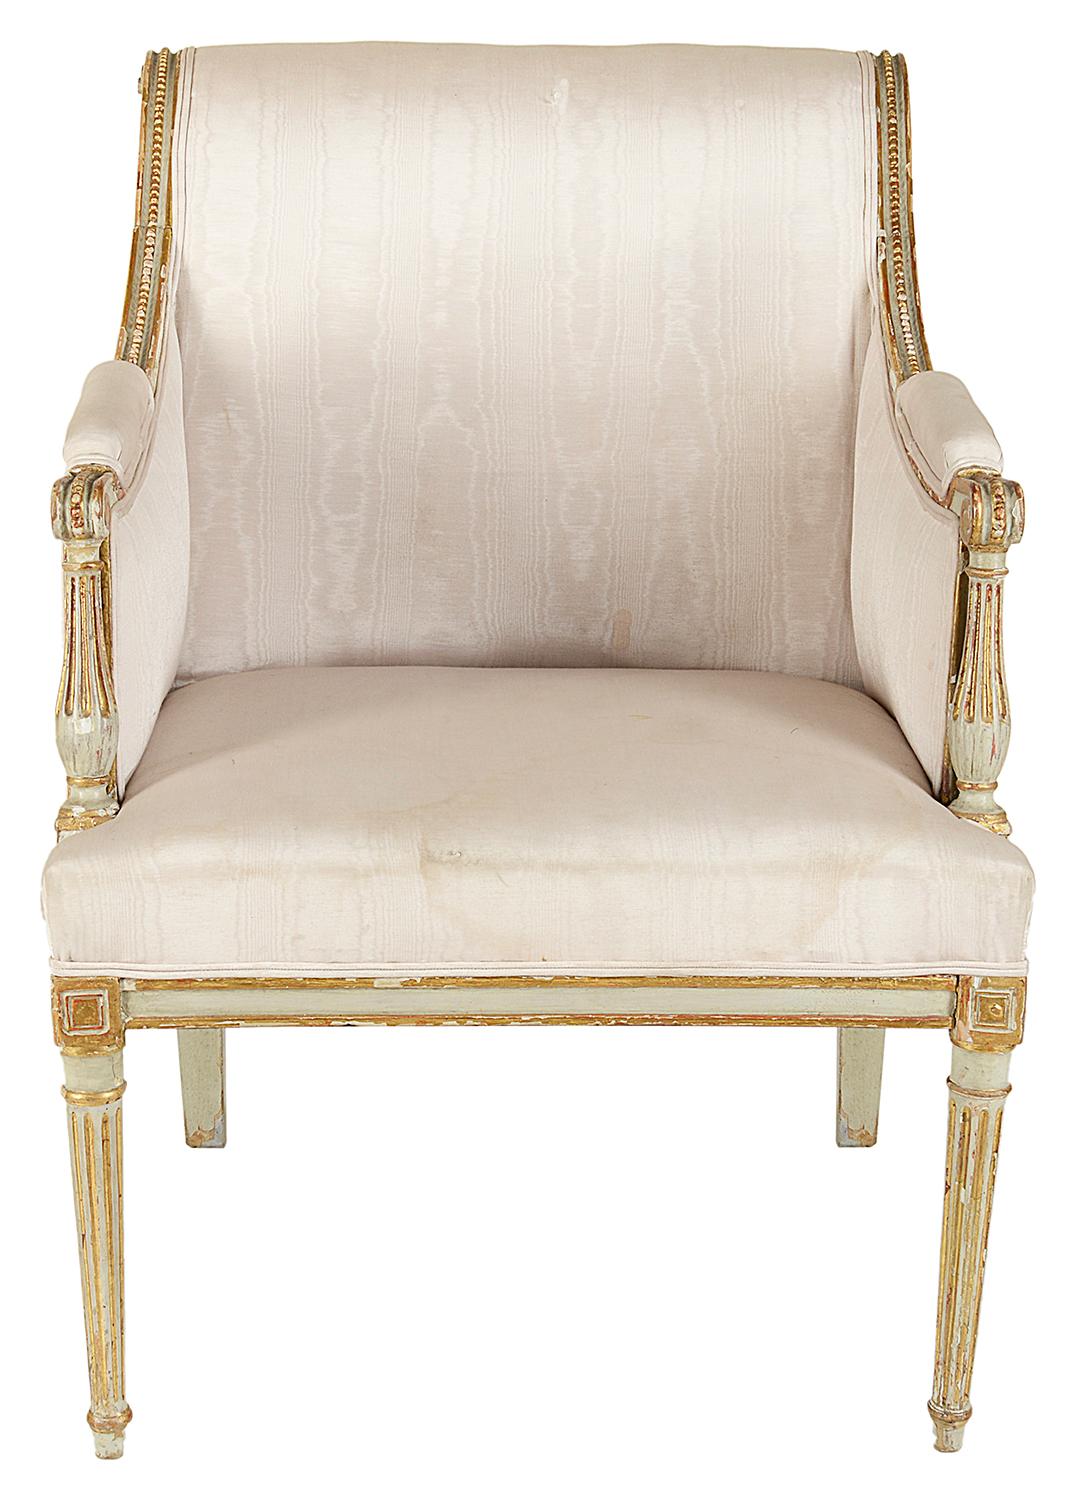 Ein sehr stilvoller Sessel im Stil des späten 18. und frühen 19. Jahrhunderts aus elfenbeinfarbener Bergere. Mit geriffelten und kannelierten, vergoldeten Verzierungen und auf gedrechselten, spitz zulaufenden Beinen.